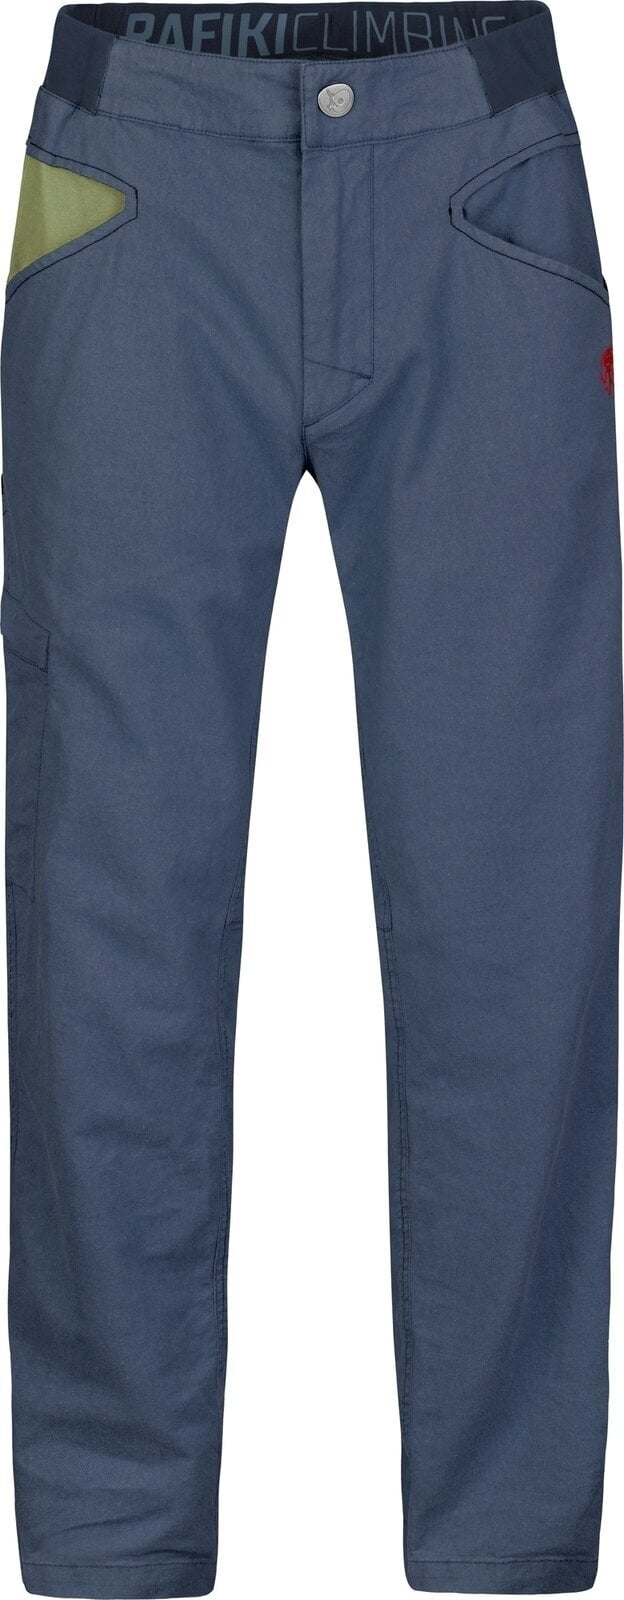 Spodnie outdoorowe Rafiki Grip Man Pants India Ink M Spodnie outdoorowe